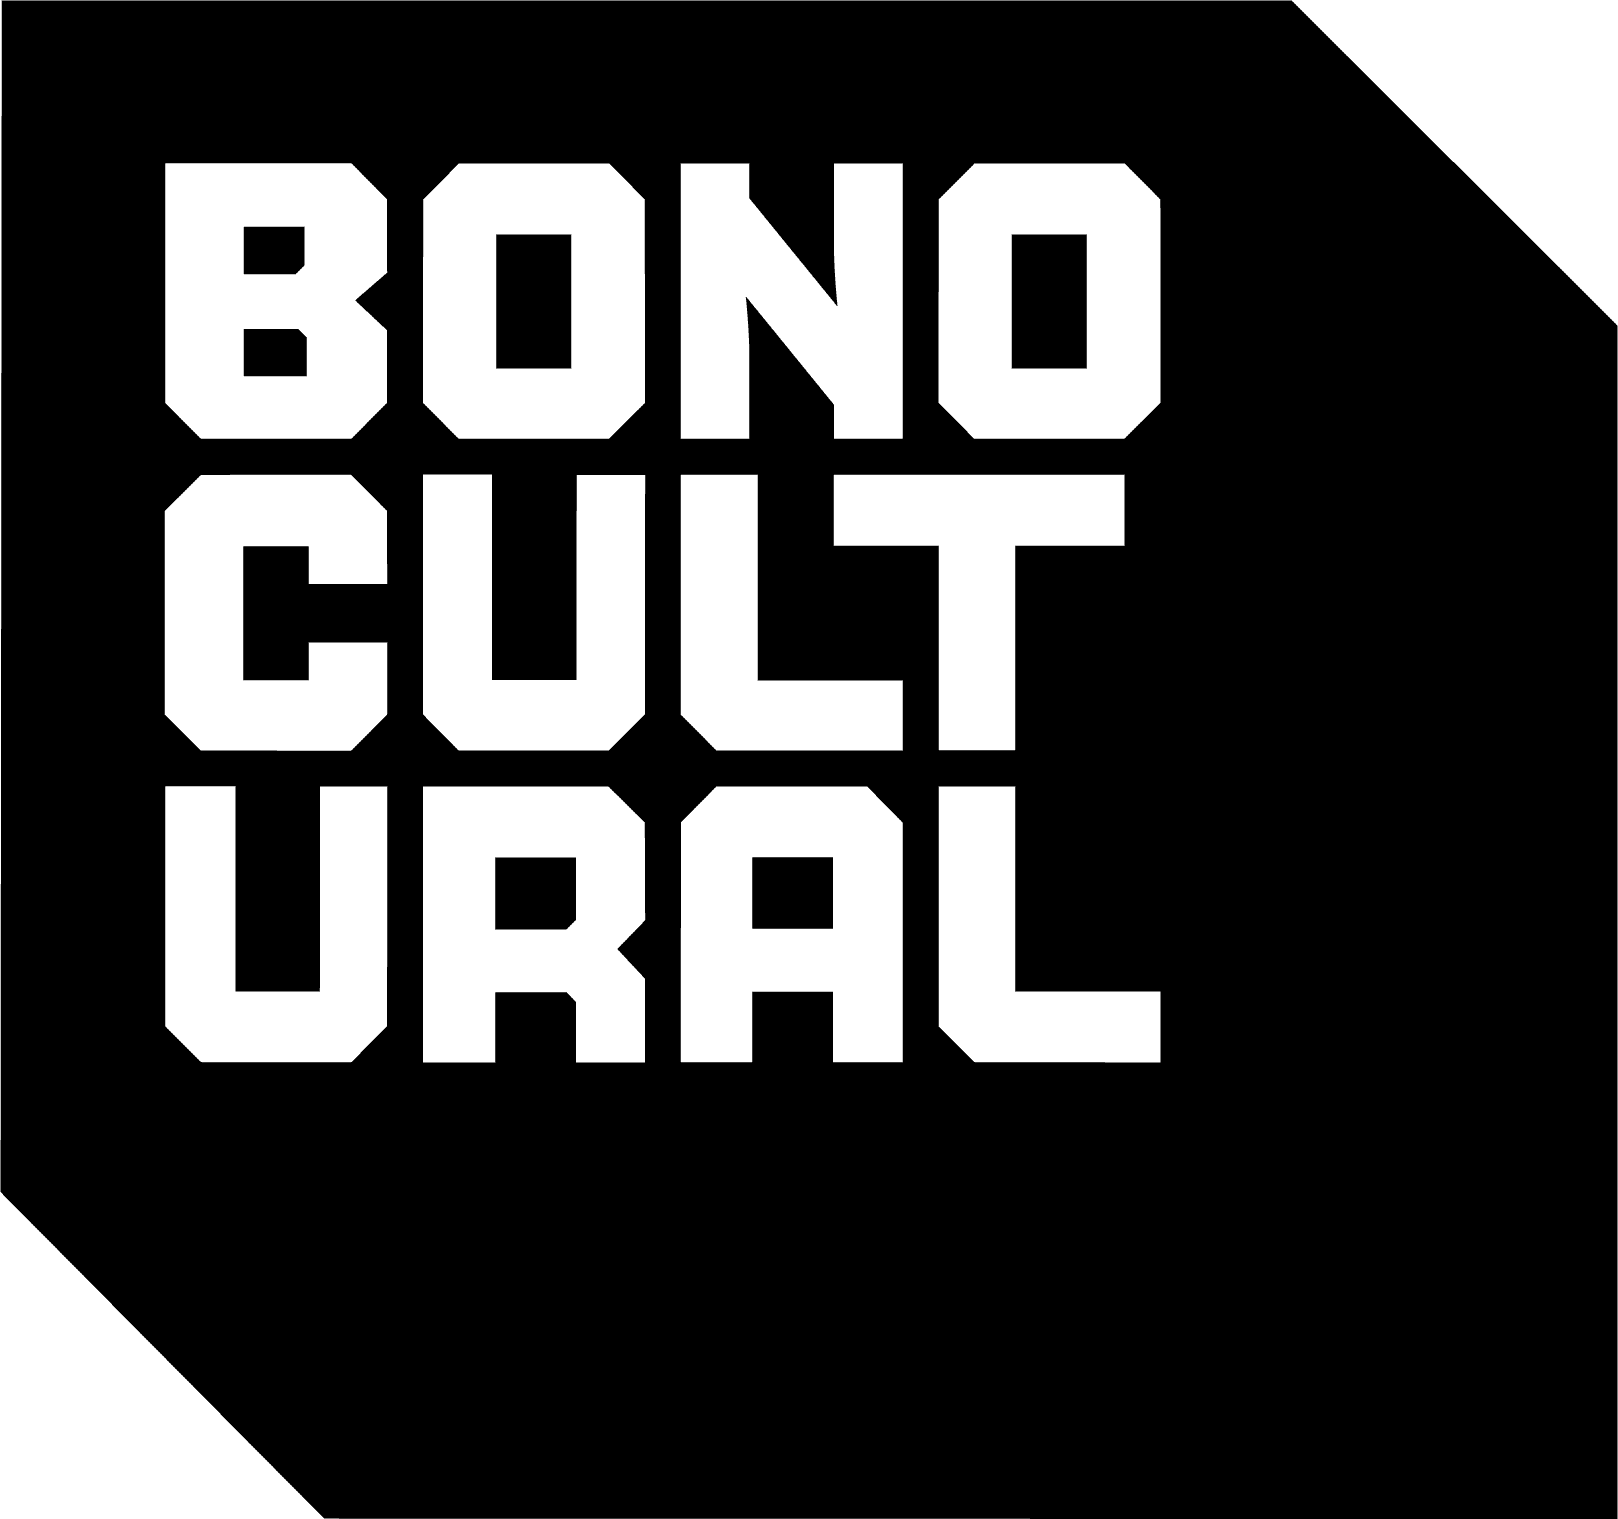 Bono Cultural Joven de 400 euros: qué es y cómo se puede solicitar la  subvención para comprar música, videojuegos y suscripciones